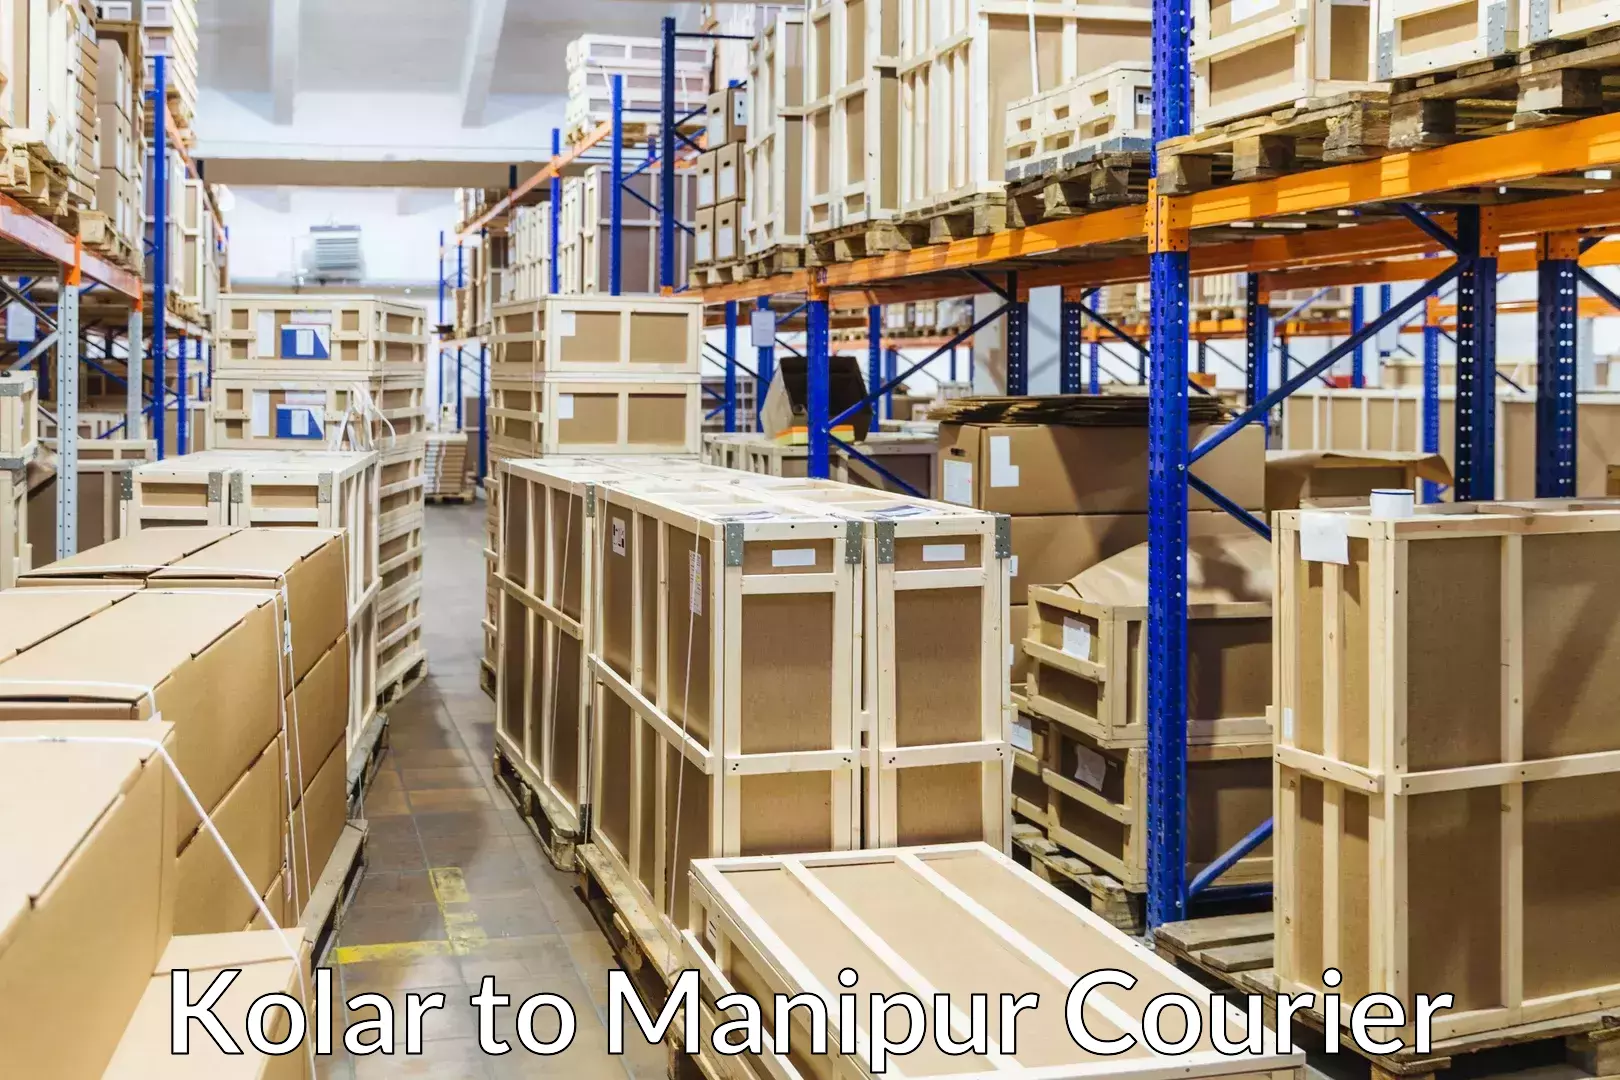 Furniture moving experts Kolar to Manipur